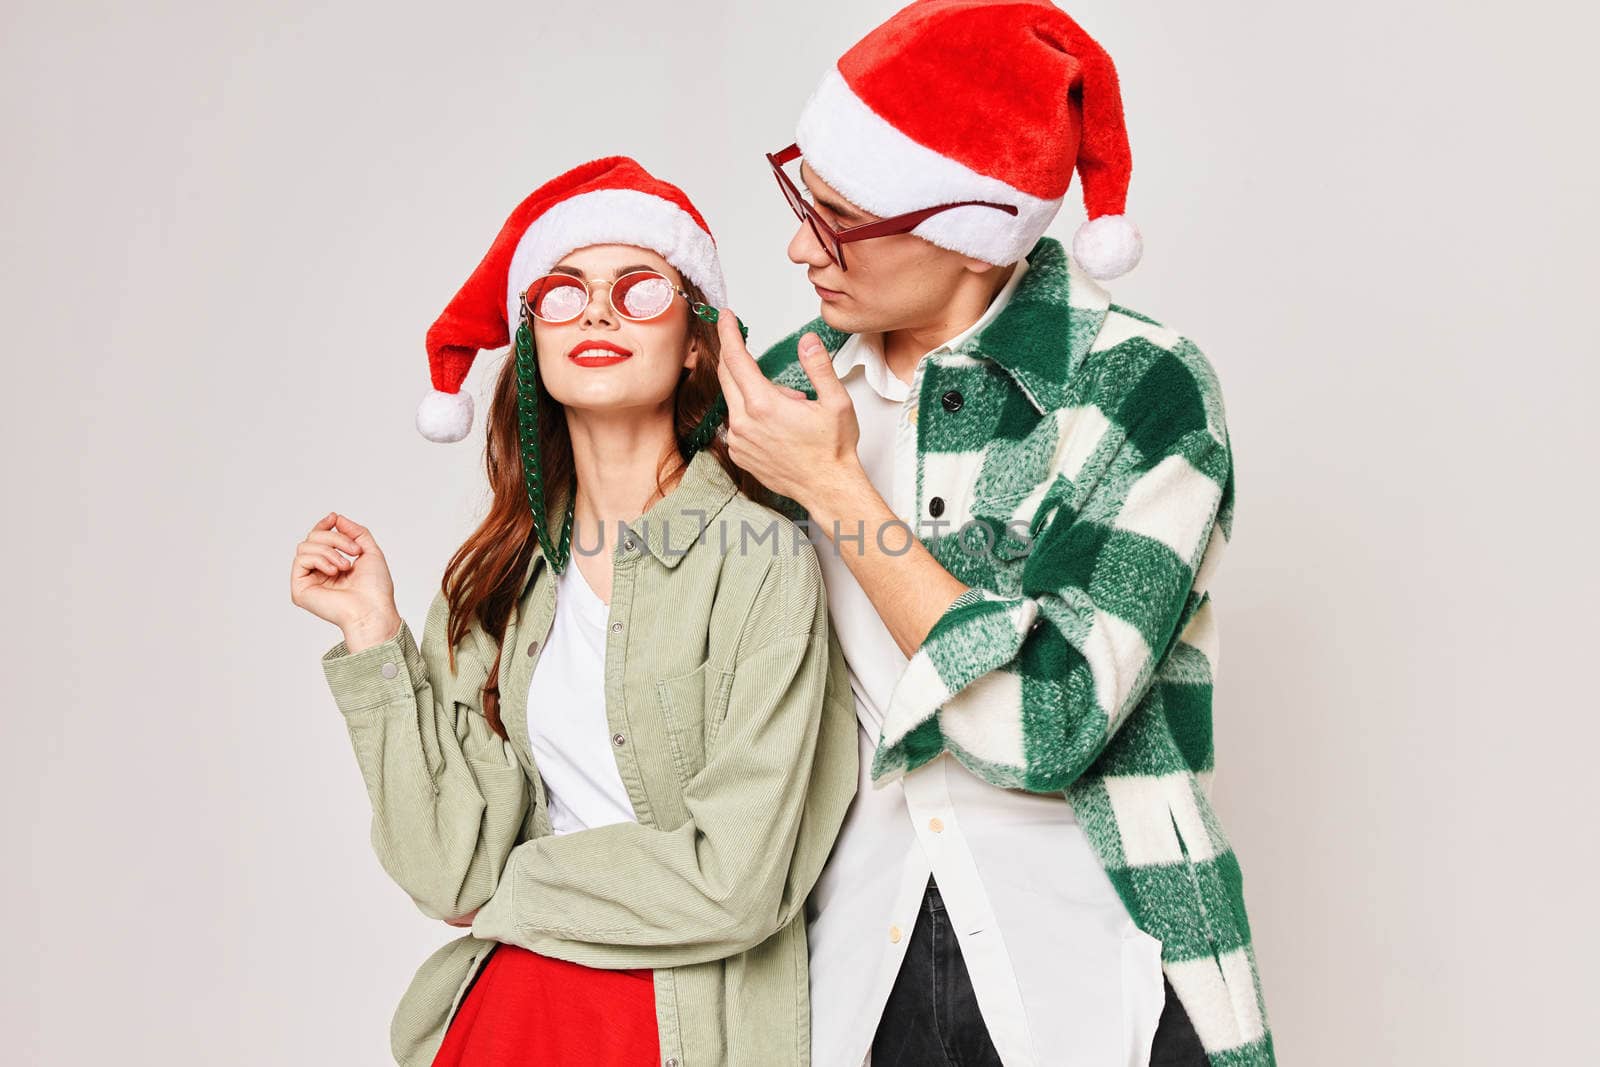 man and woman christmas hat fun holiday christmas sunglasses. High quality photo